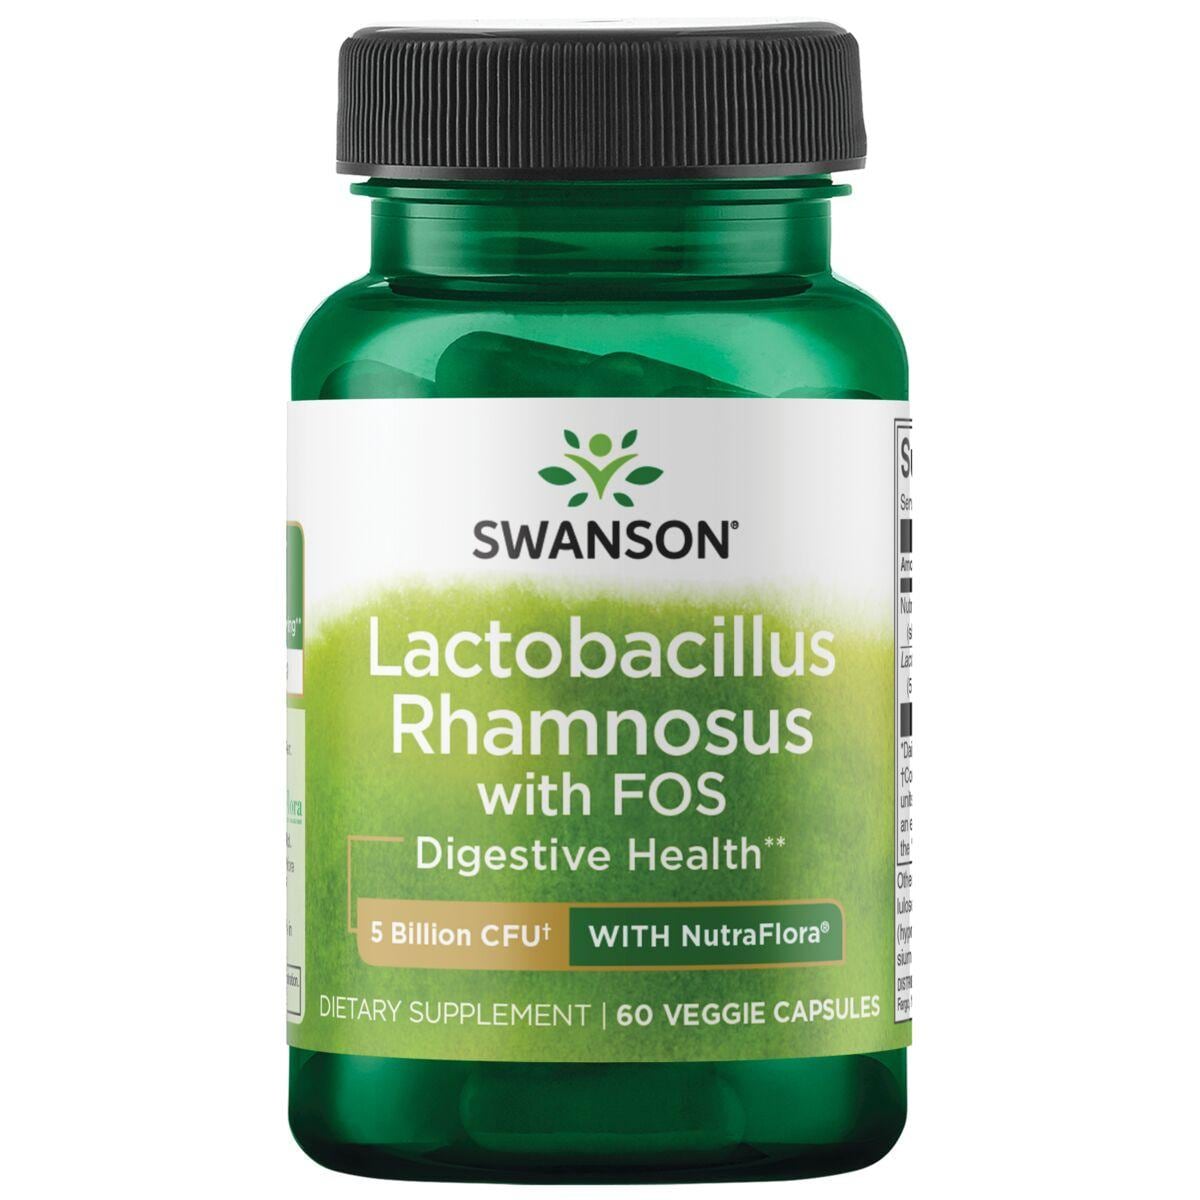 Swanson Probiotics Lactobacillus Rhamnosus with Fos Supplement Vitamin | 5 Billion CFU | 60 Veg Caps